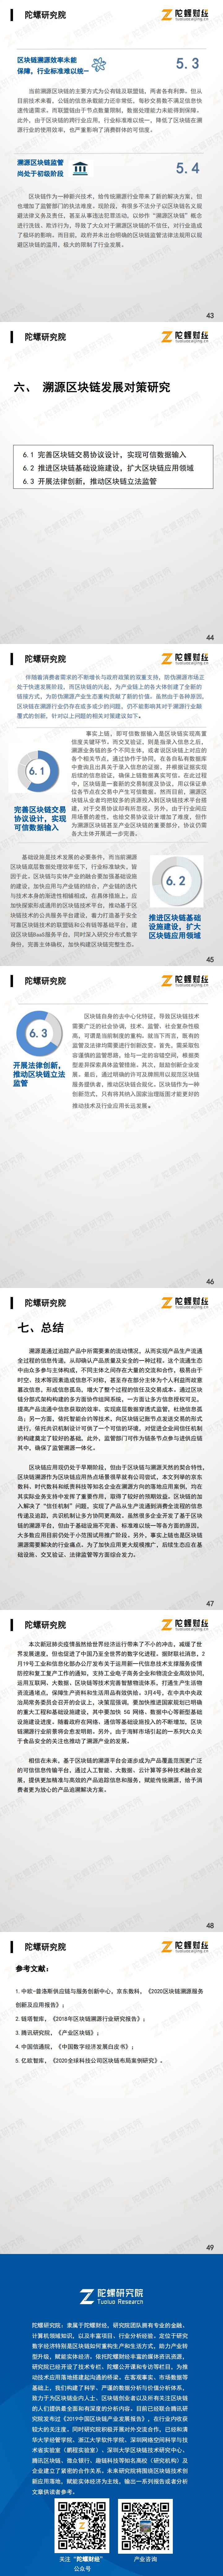 【陀螺研究院】中国“区块链+溯源”行业研究报告_2.jpg